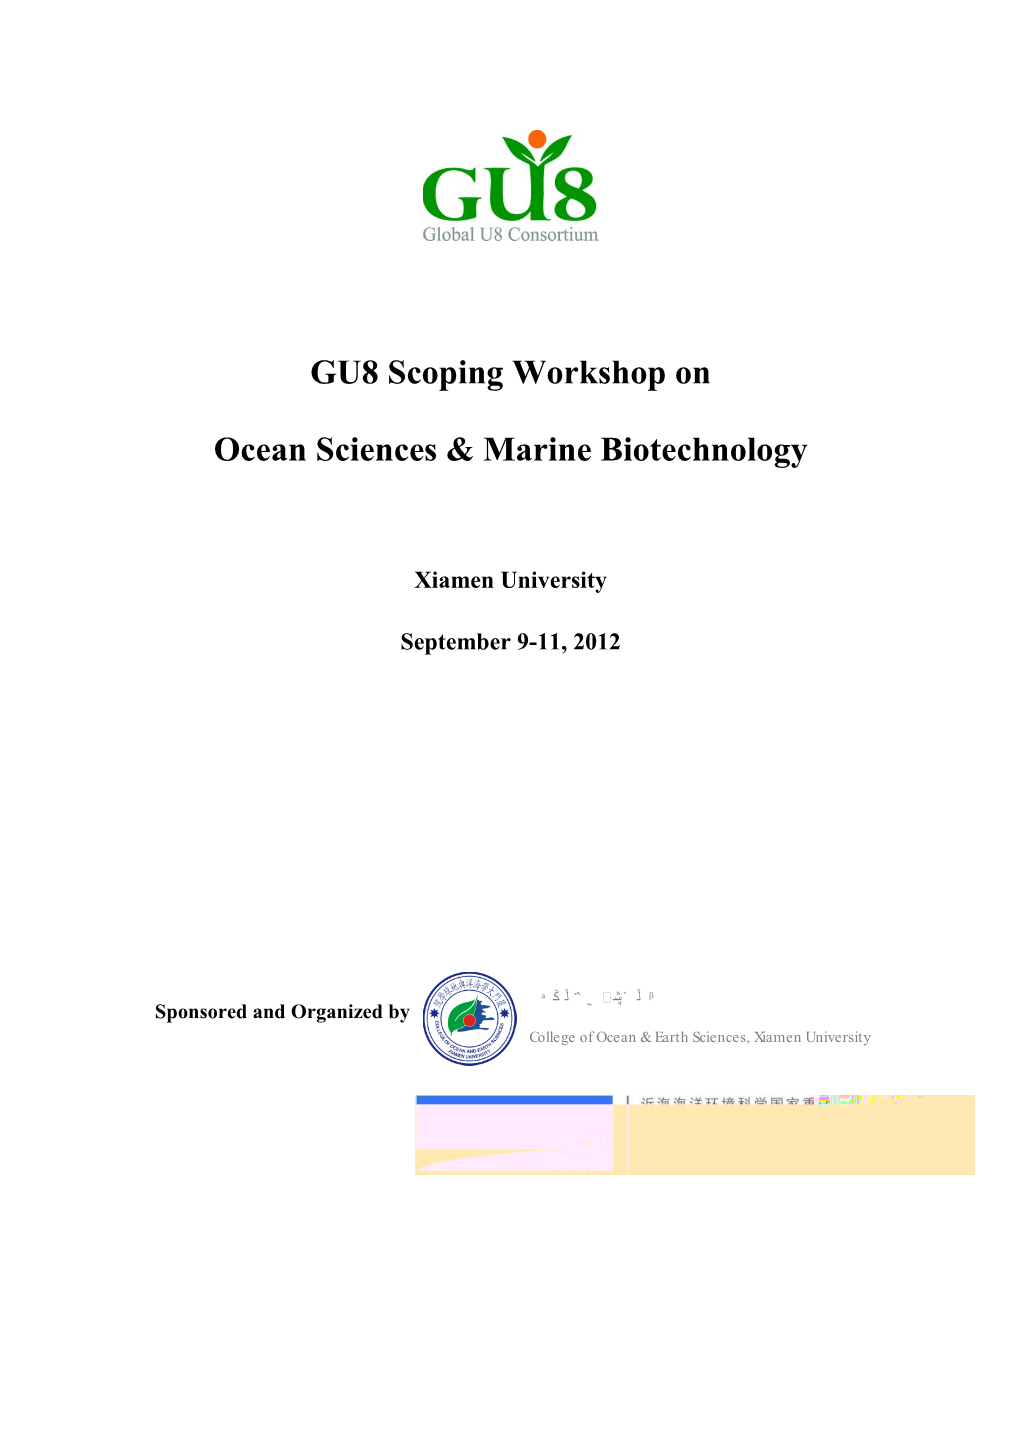 GU8 Scoping Workshop on Ocean Sciences & Marine Biotechnology